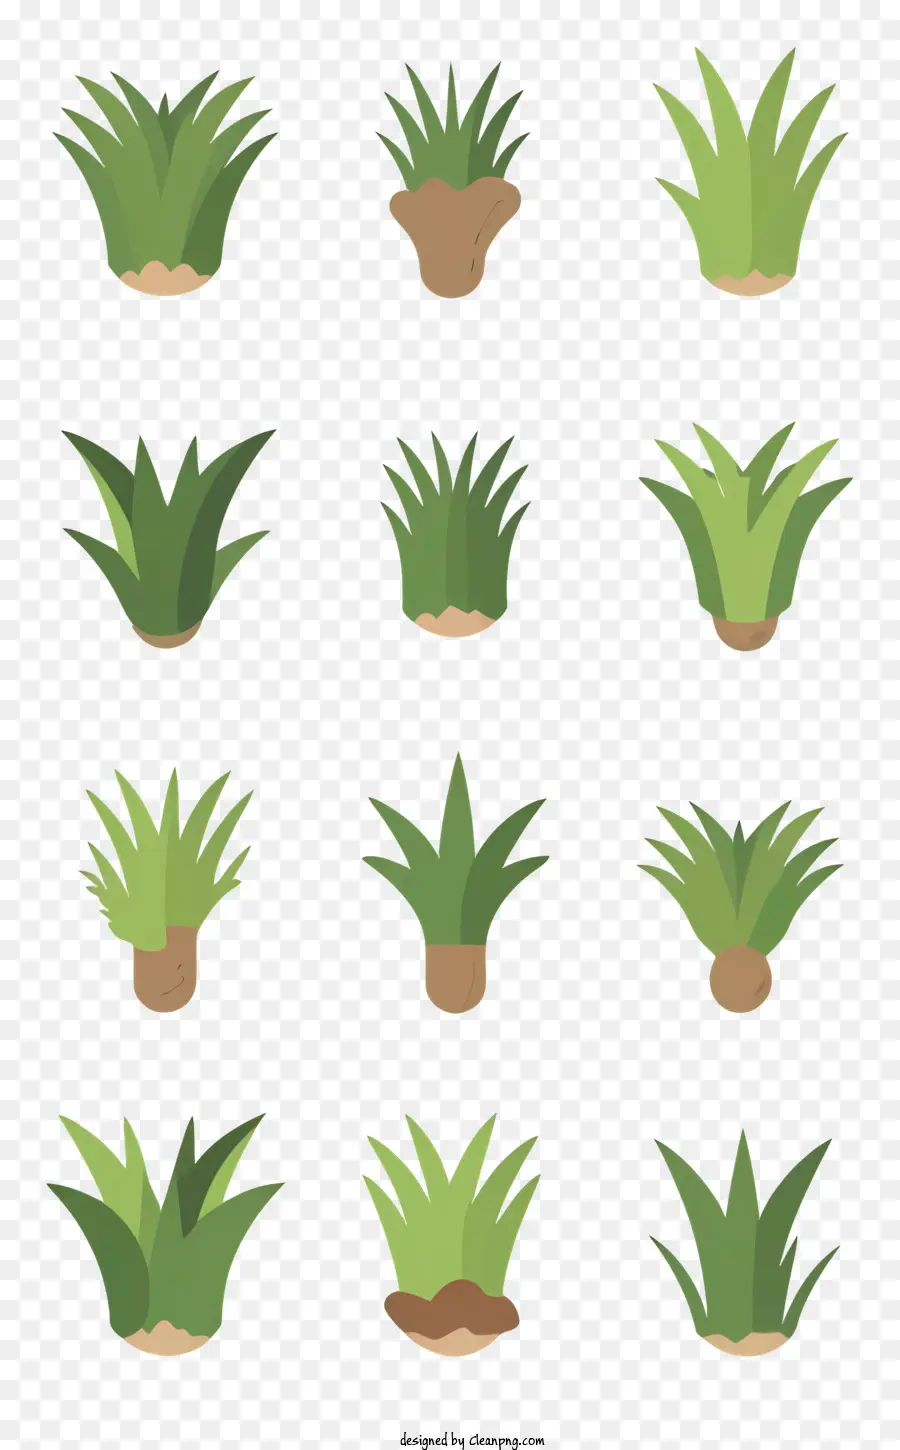 piante verdi forme diverse trame diverse - Immagine semplice di diverse piante su sfondo nero